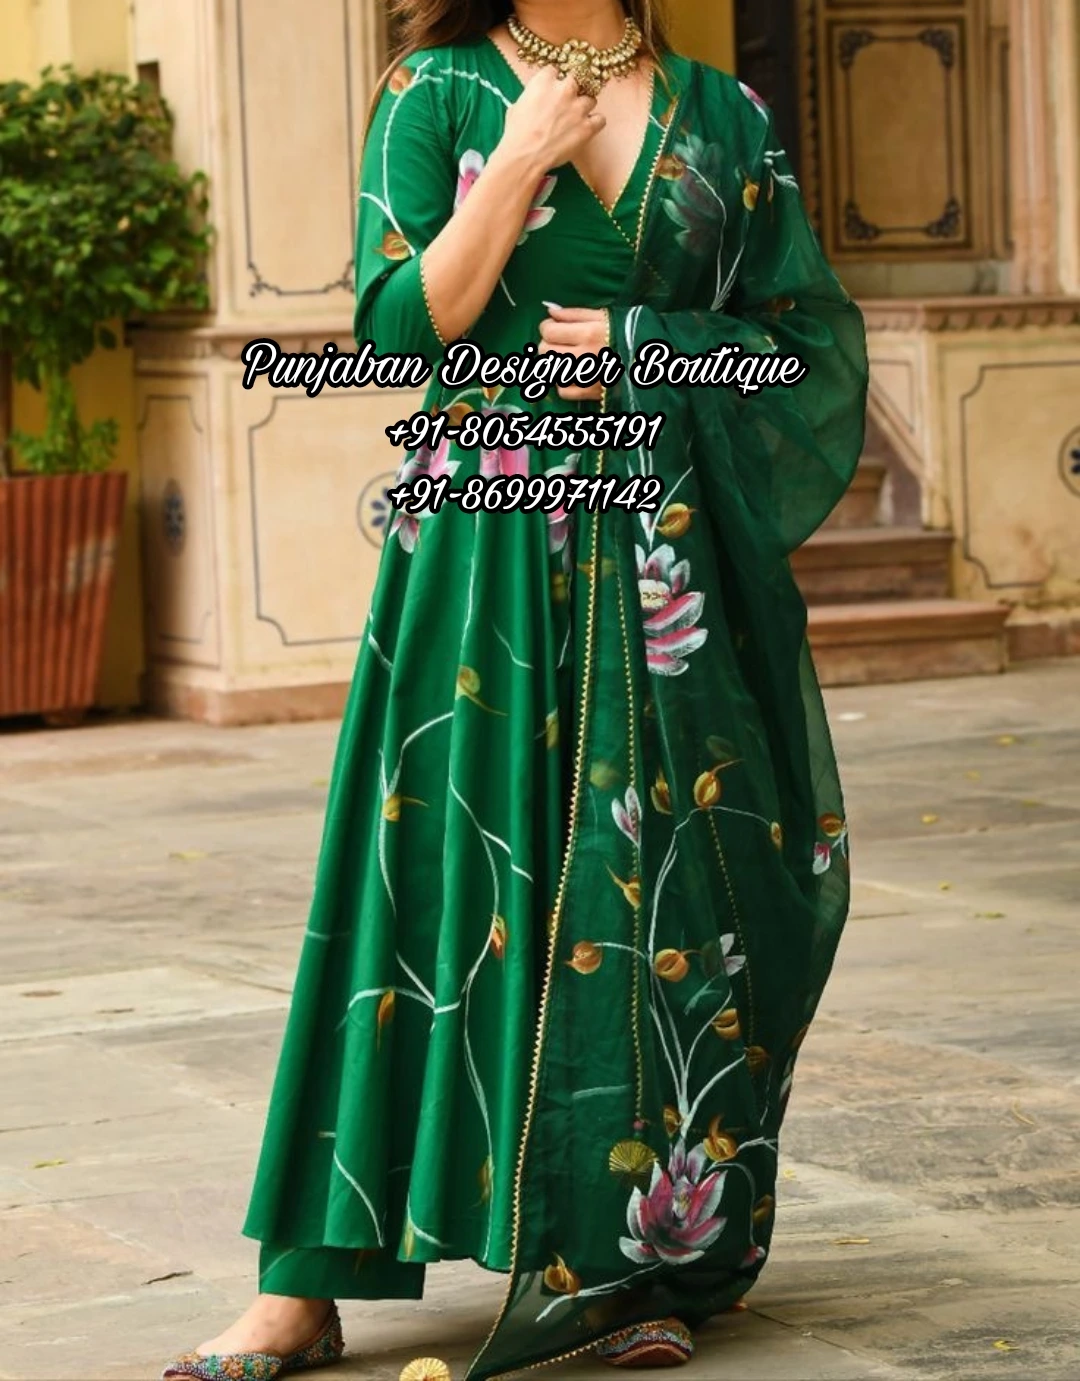 Punjabi Dress Woman | Punjaban Designer Boutique